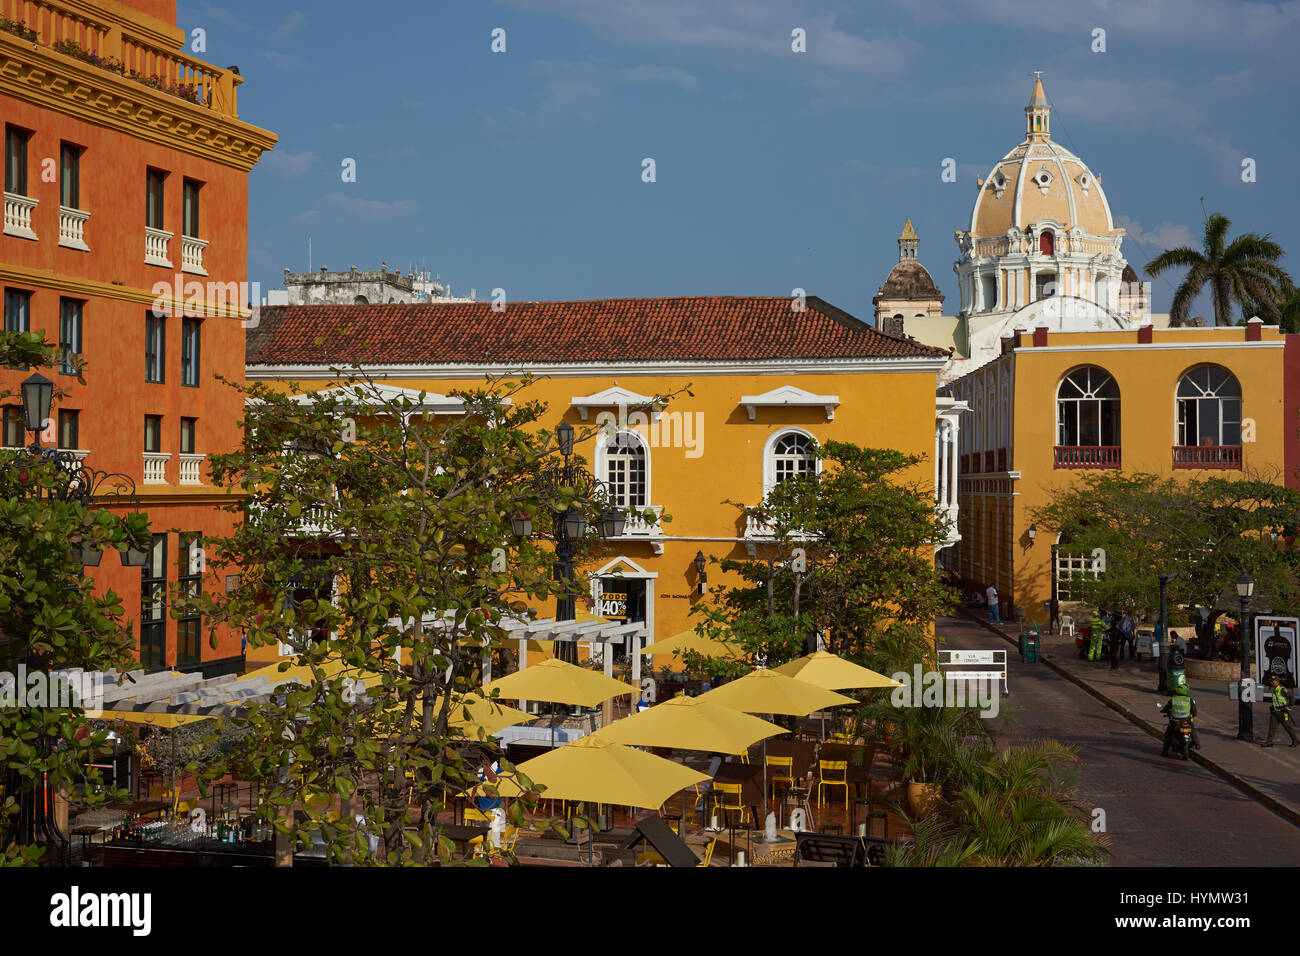 Abri parasols colorés diners du soleil dans la place de santa teresa dans le centre historique de la ville de Cartagena de Indias en Colombie. Banque D'Images